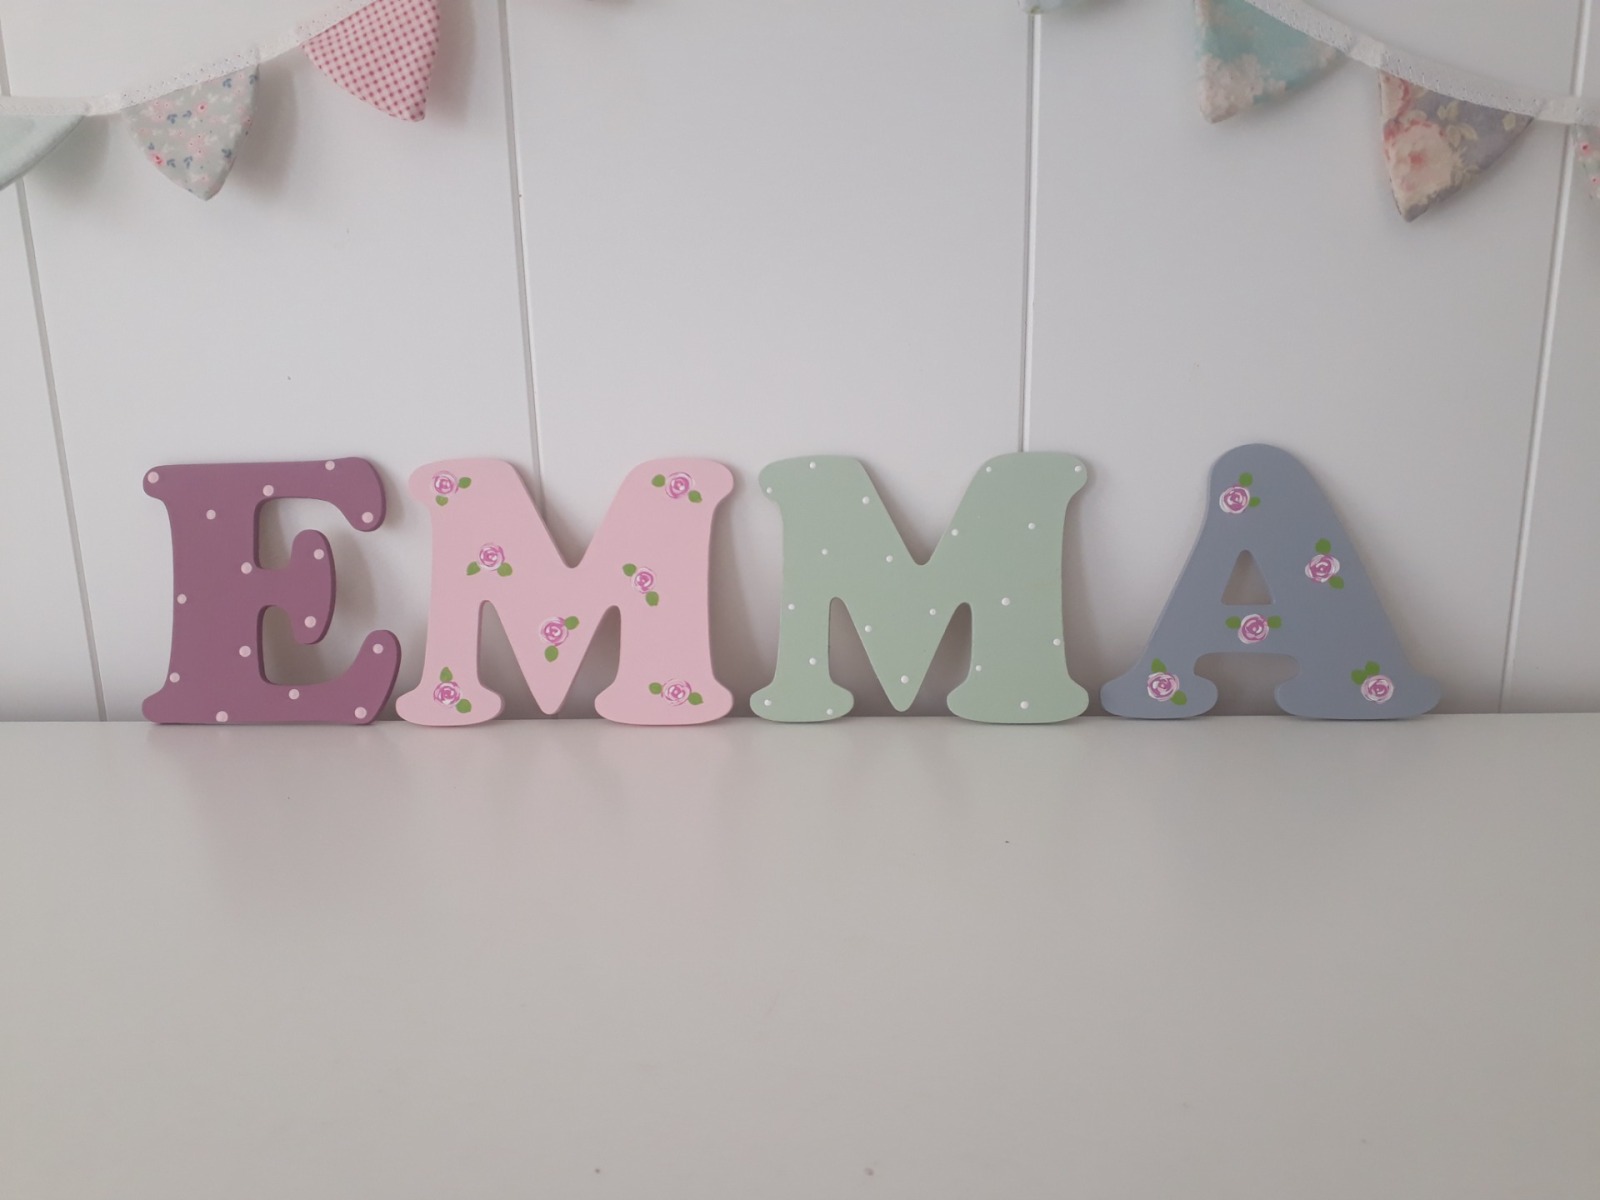 10 cm Holzbuchstaben Kinderzimmer personalisiert in malve rose grau und mint